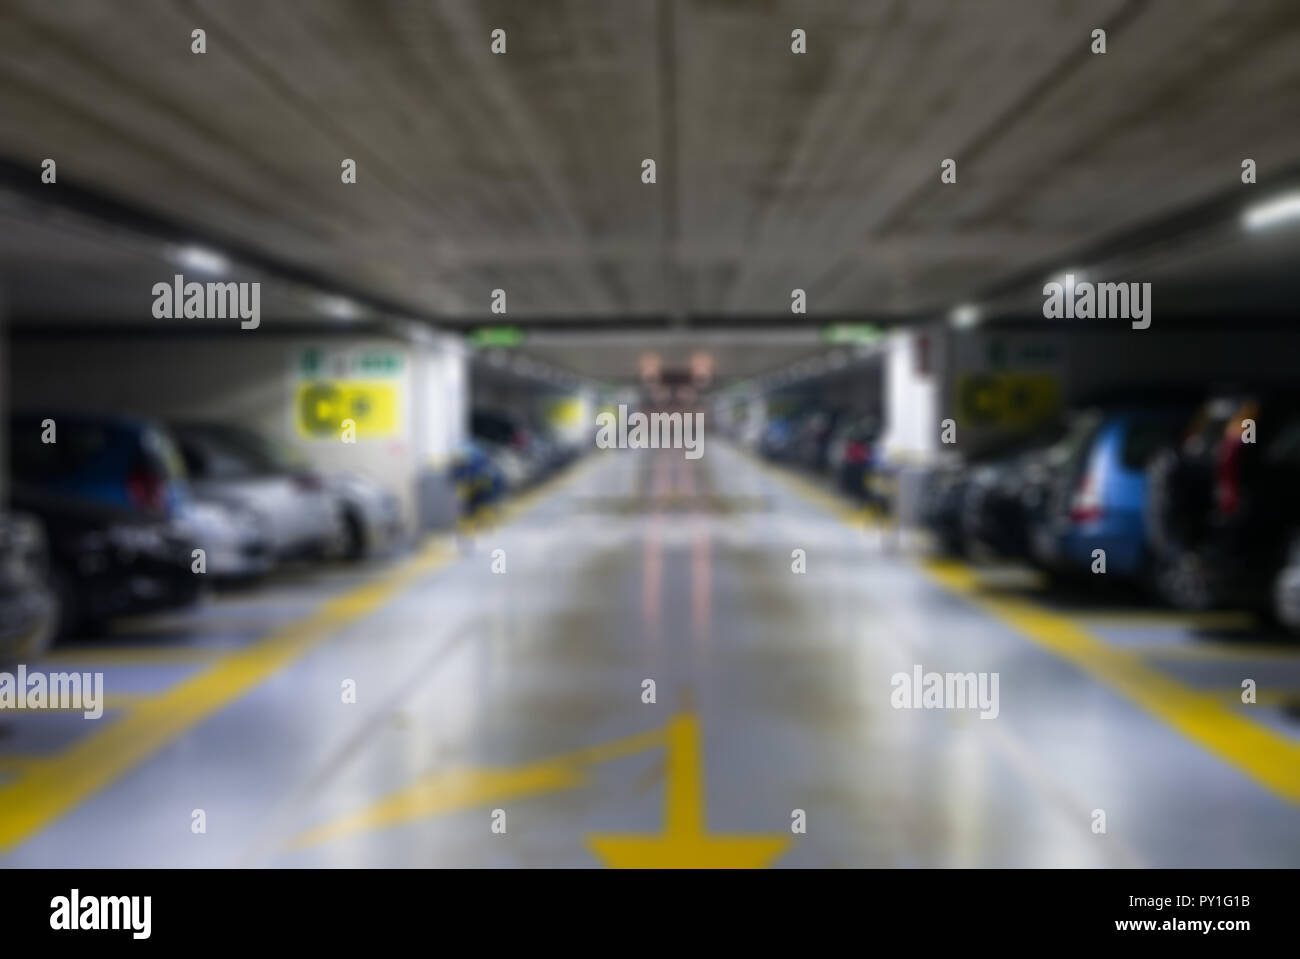 Blurred background of underground car parking garage Stock Photo